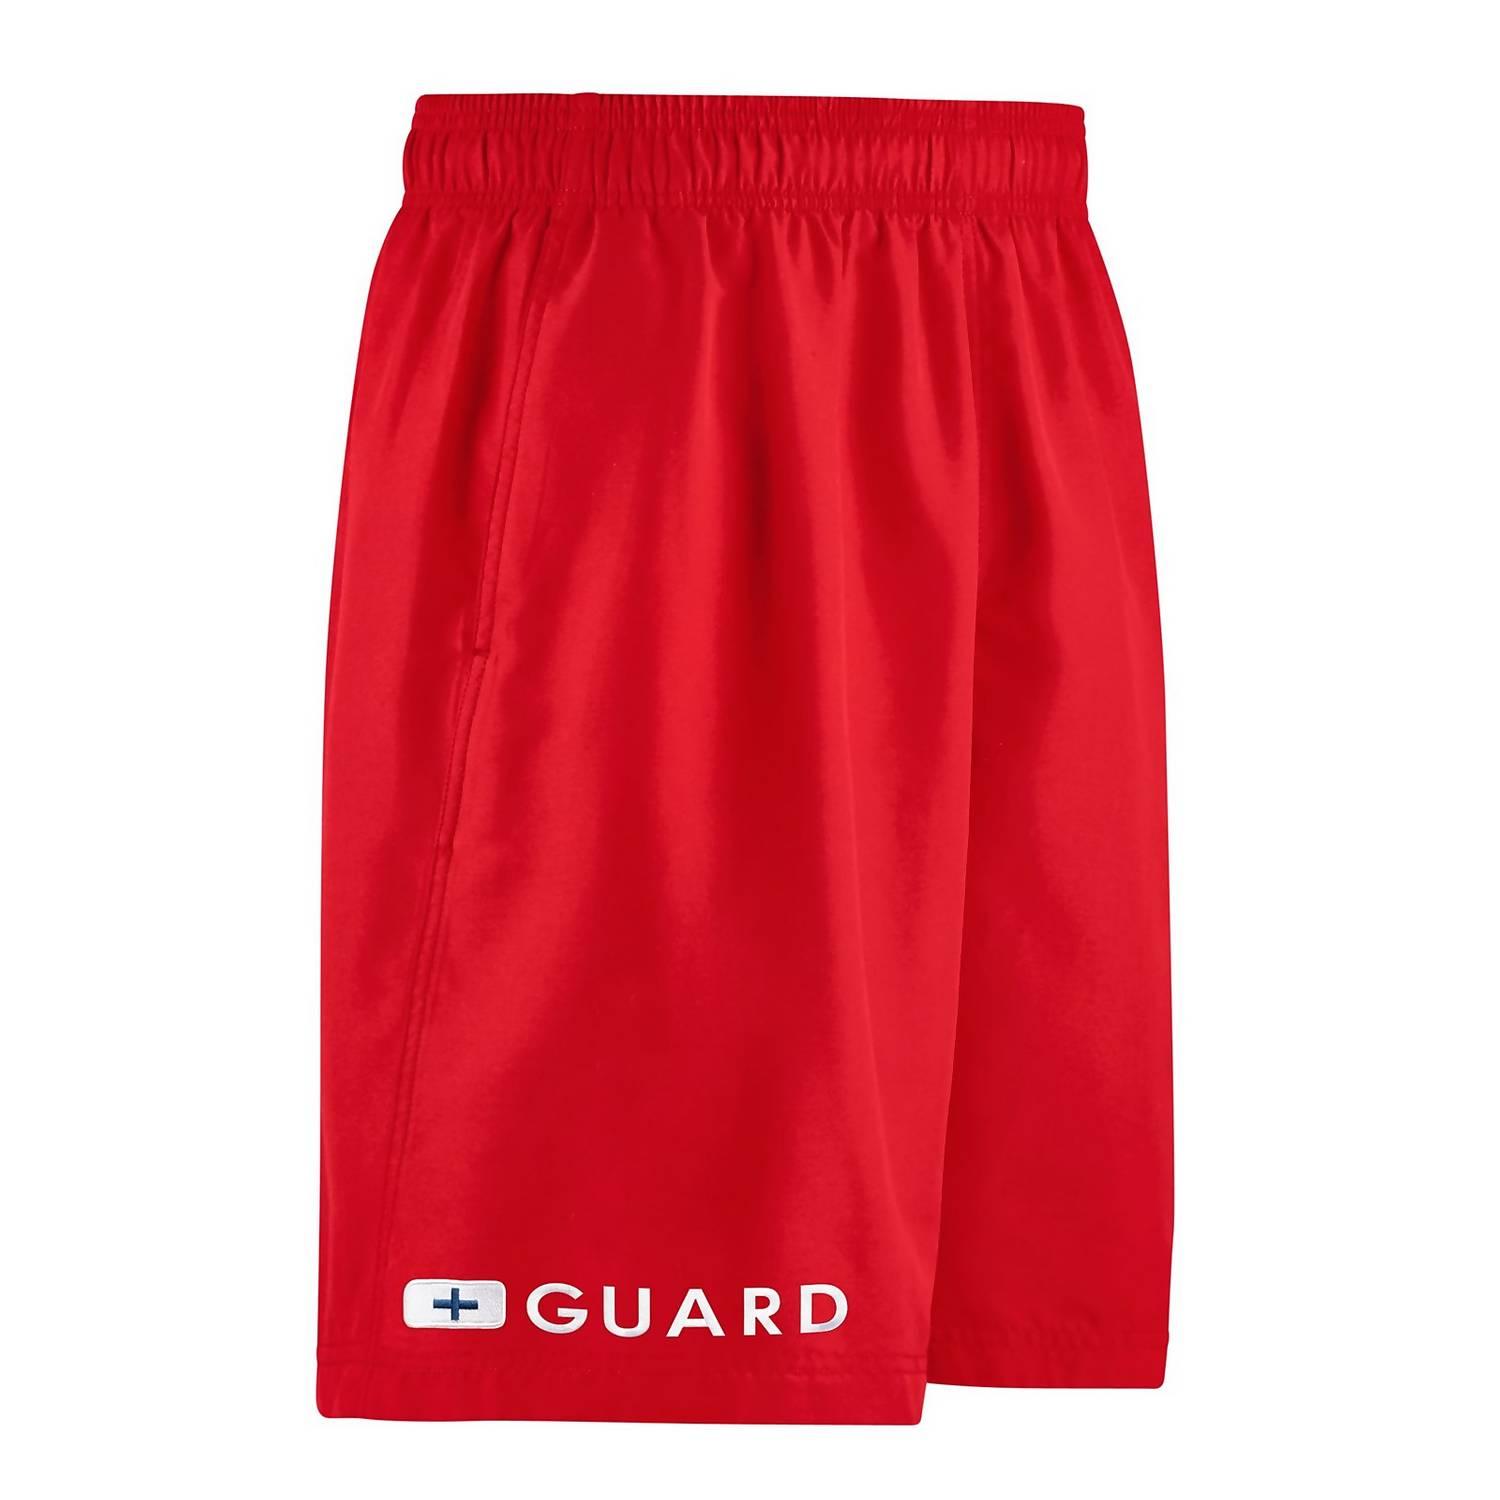 Speedo 19 Guard Volley Short